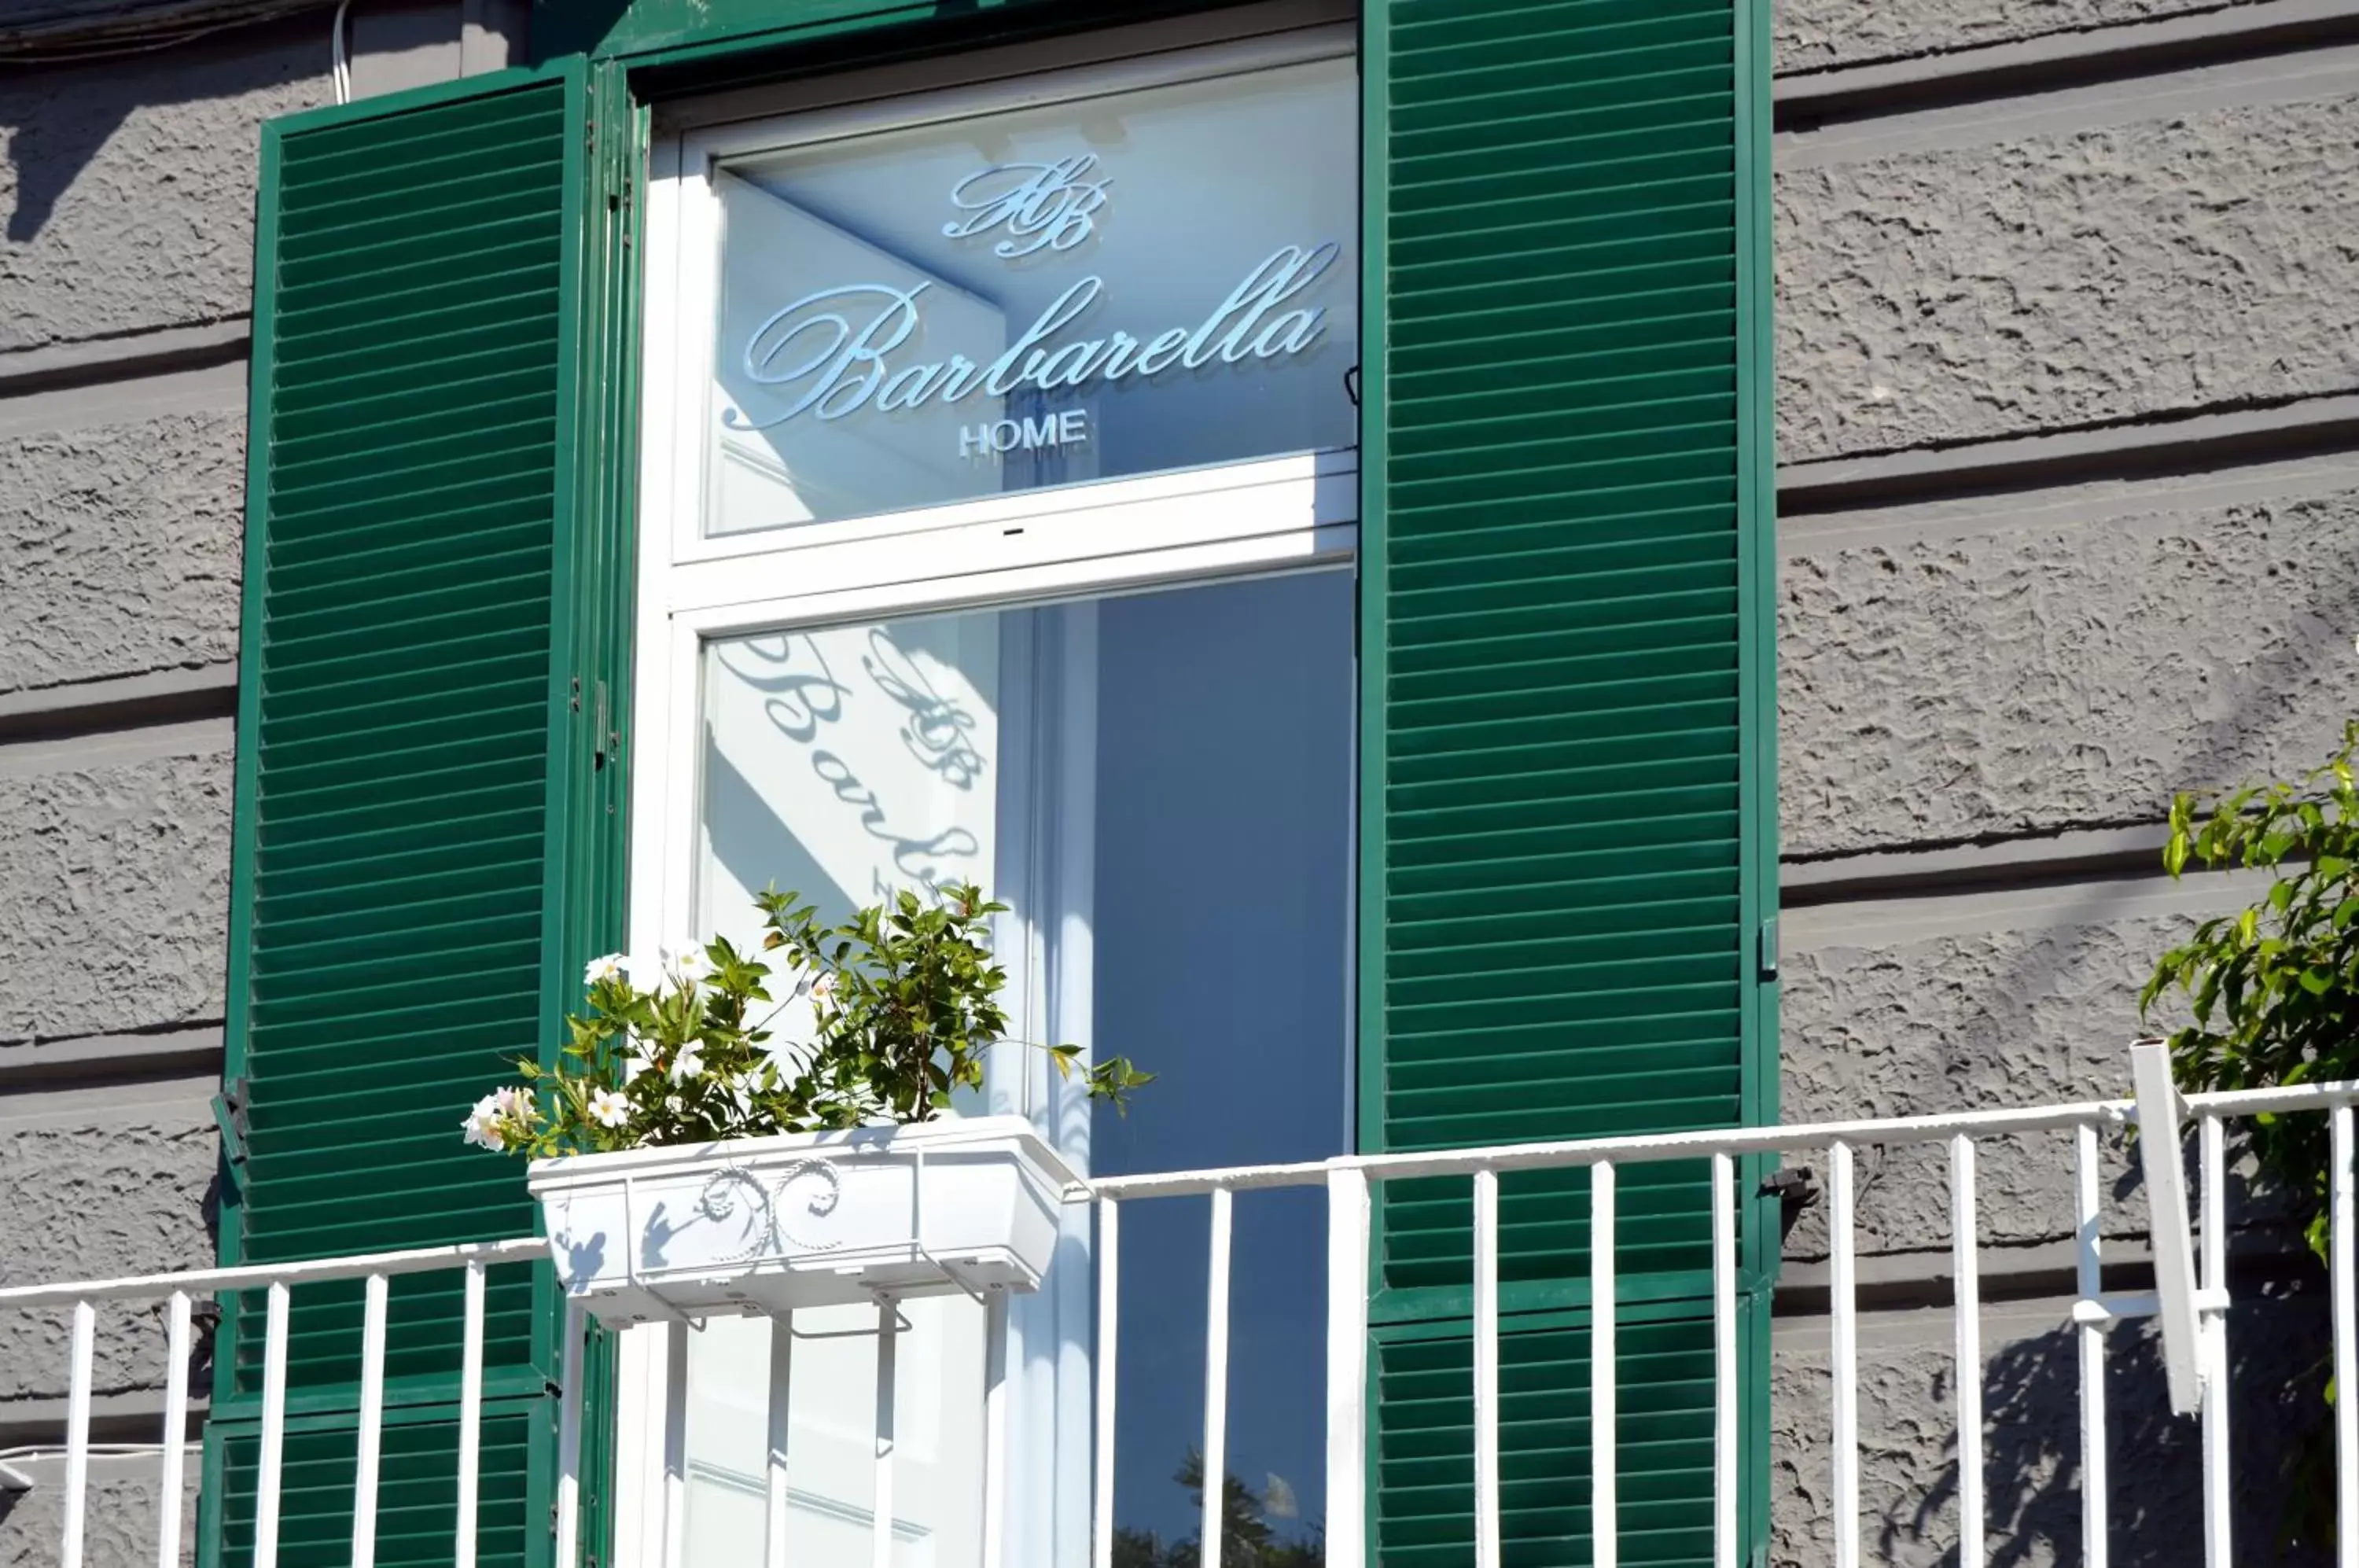 Facade/entrance in Barbarella Home